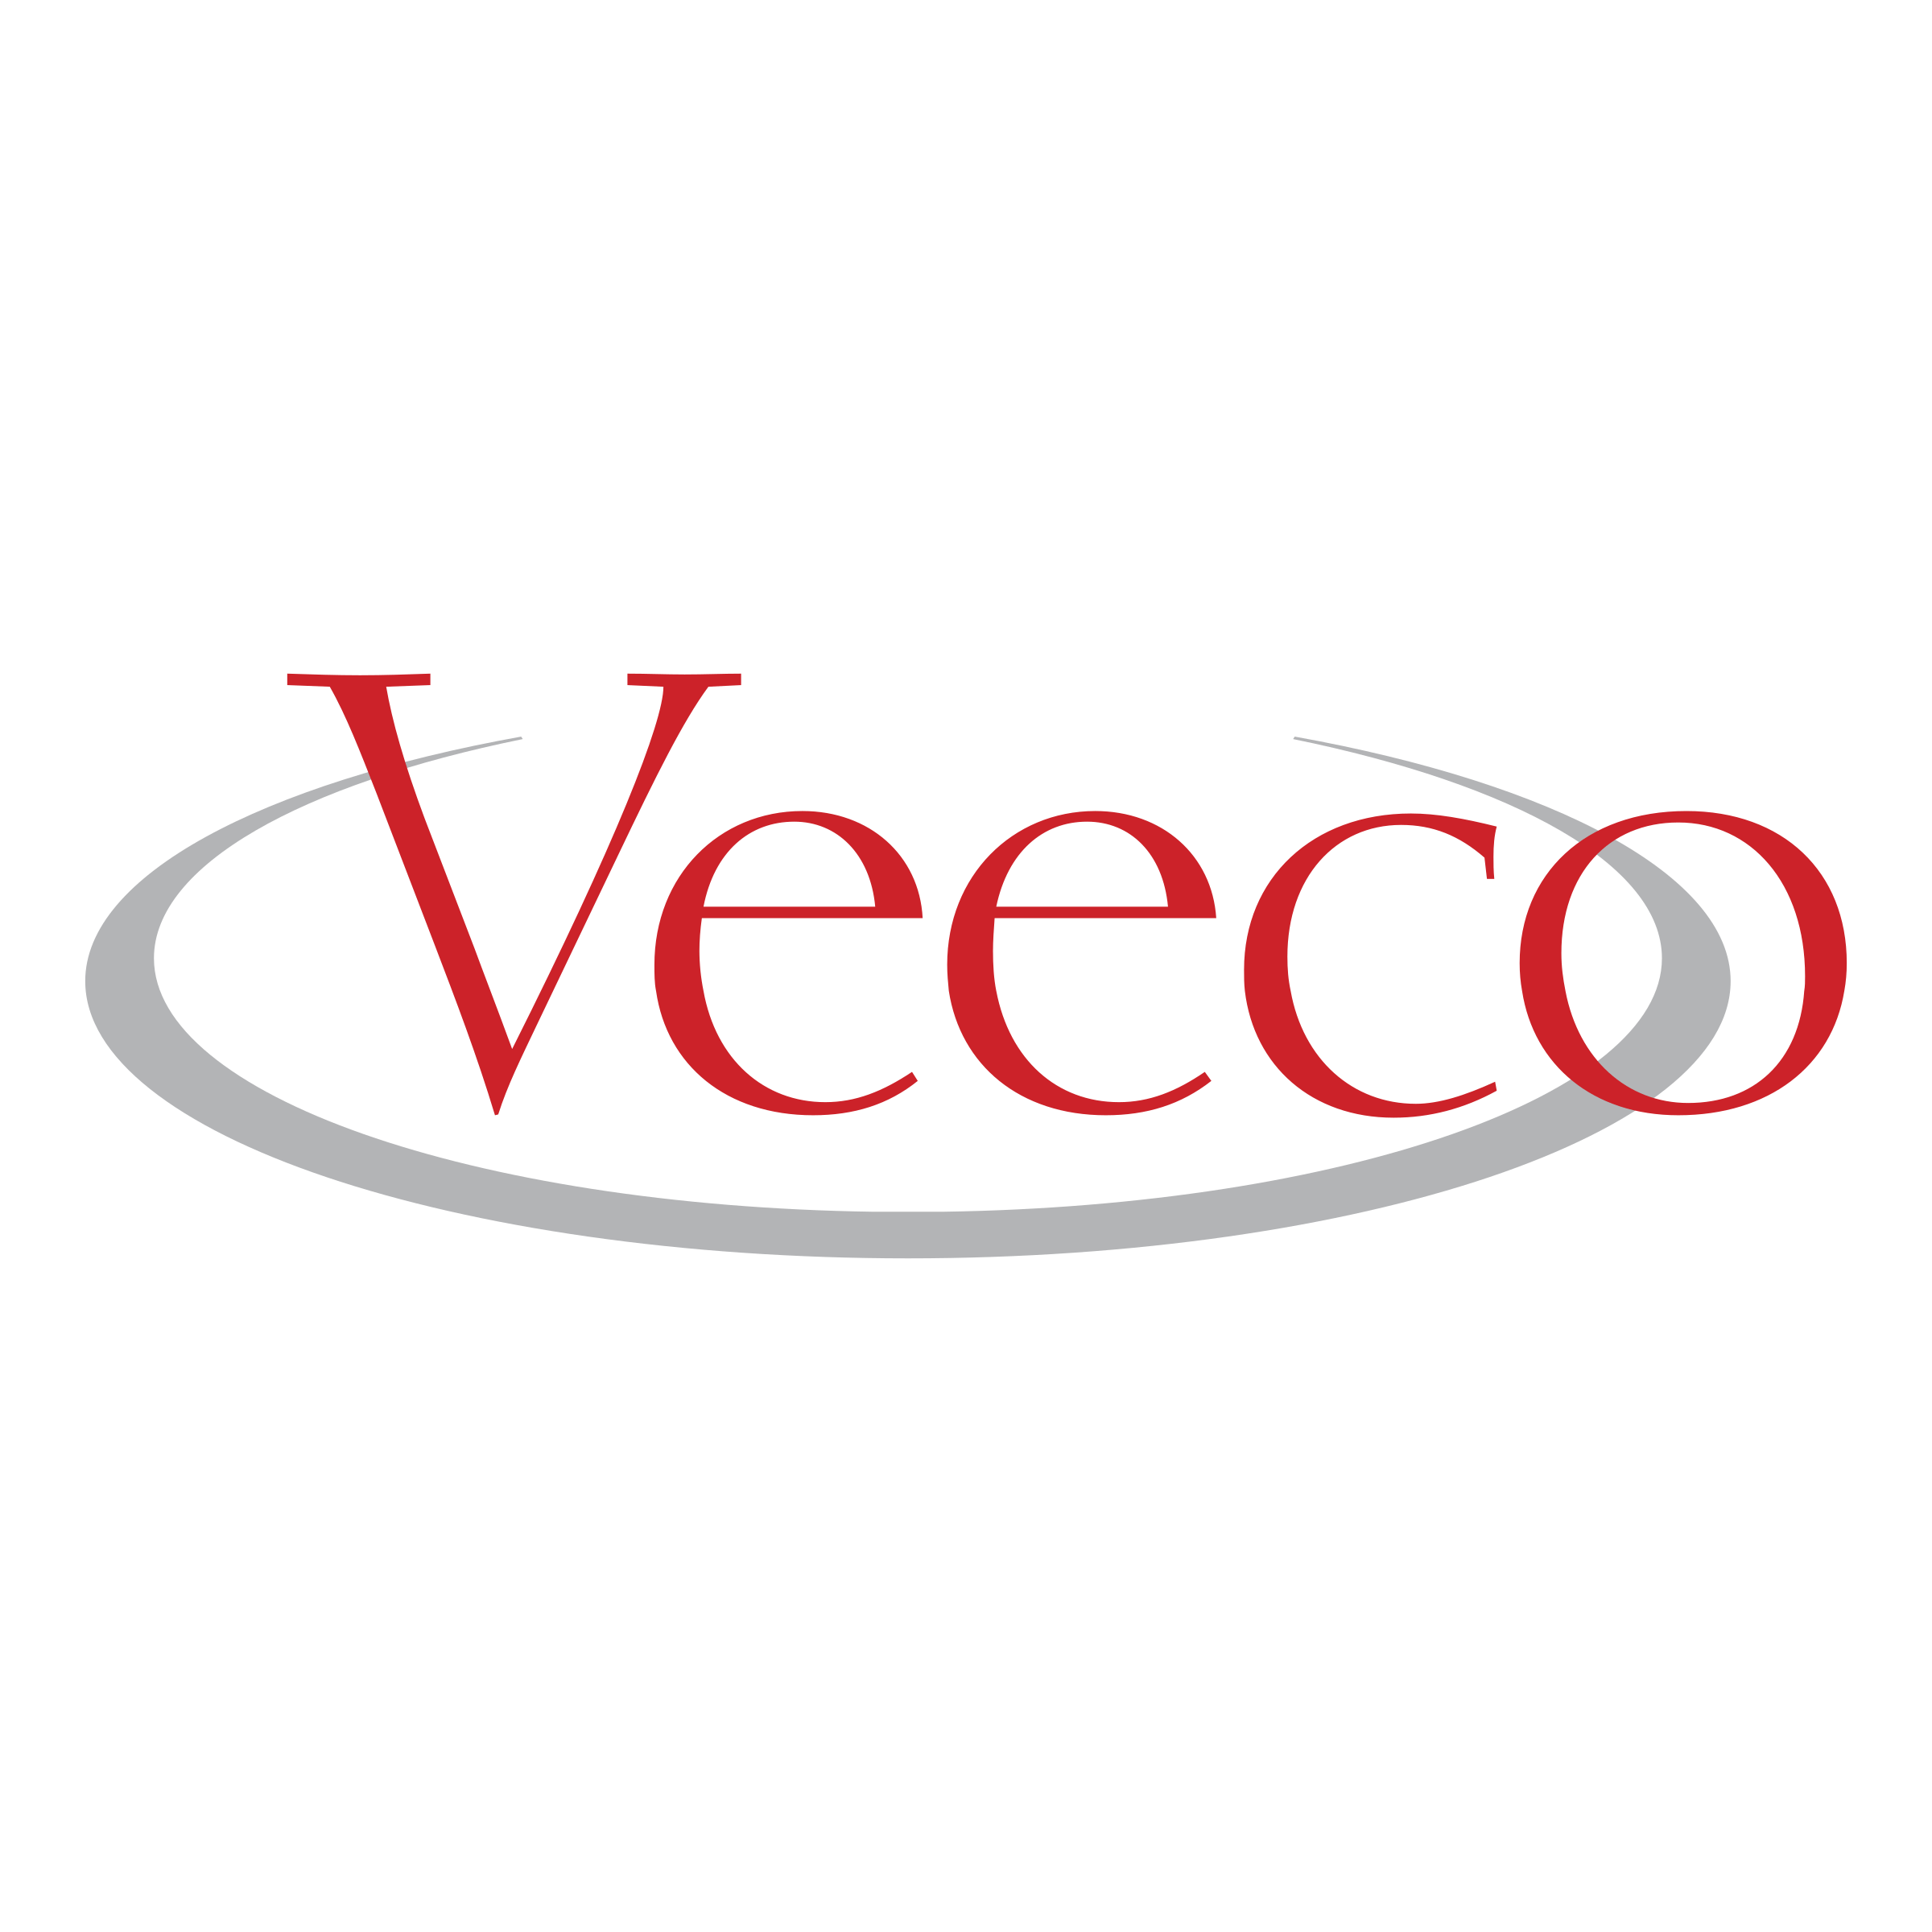 Veeco 로고 - LogoDix